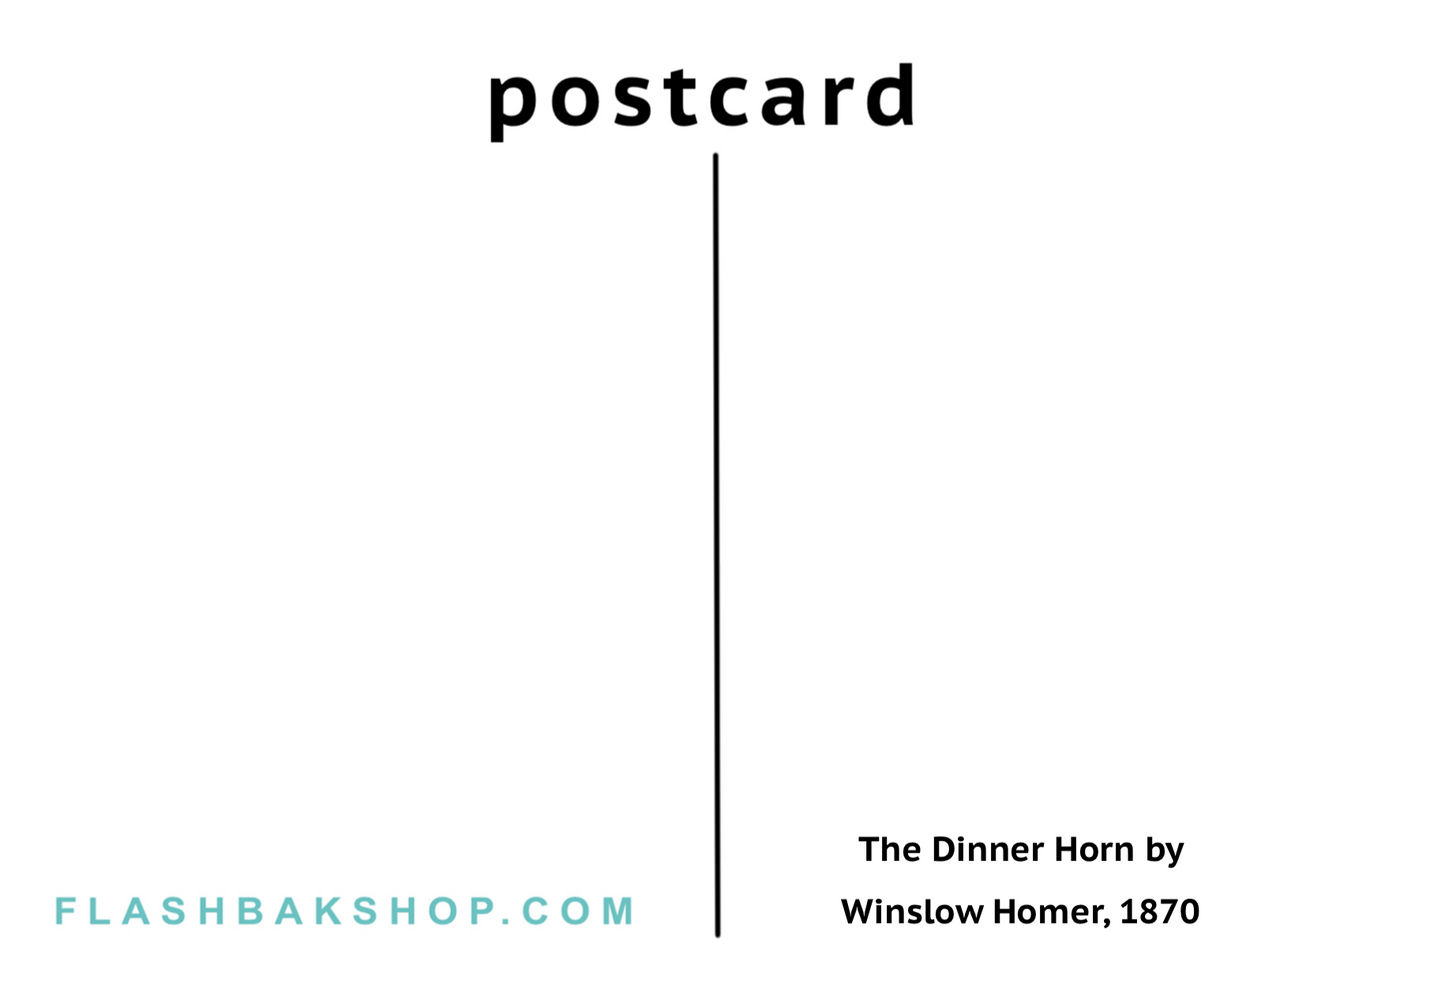 El cuerno de la cena de Winslow Homer, 1870 - Postal